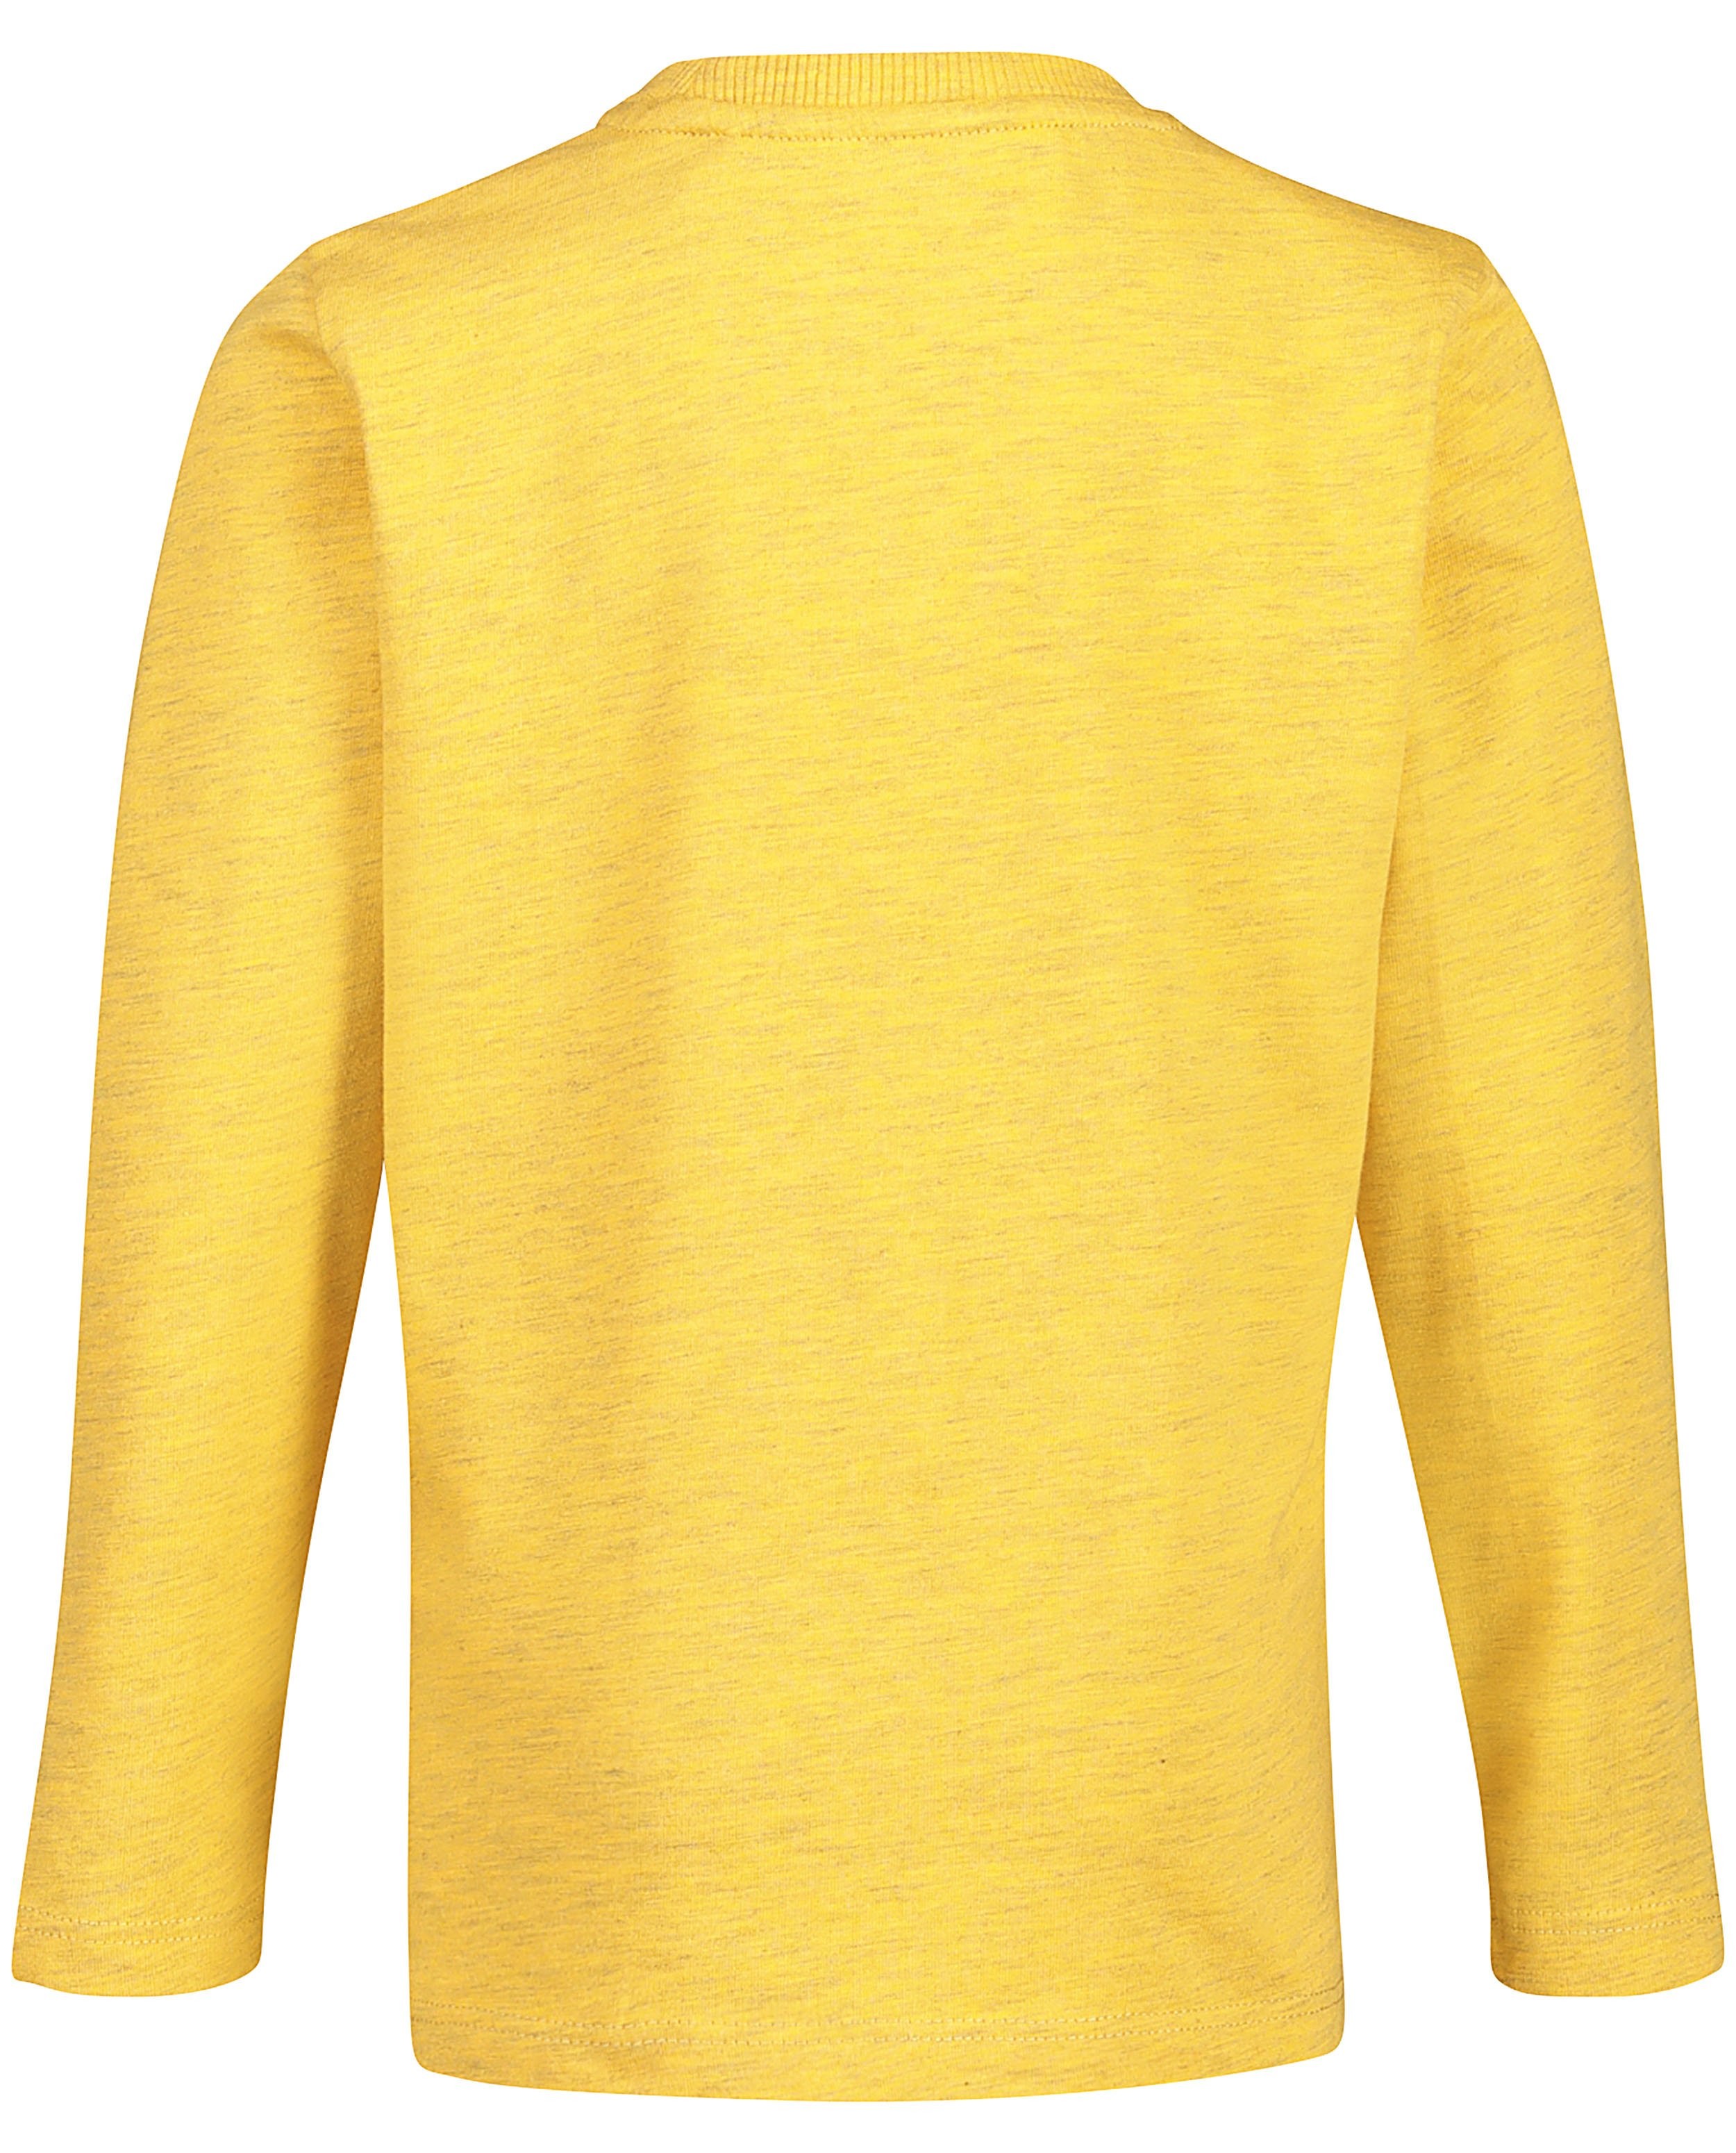 T-shirts - Gele longsleeve met Disney print